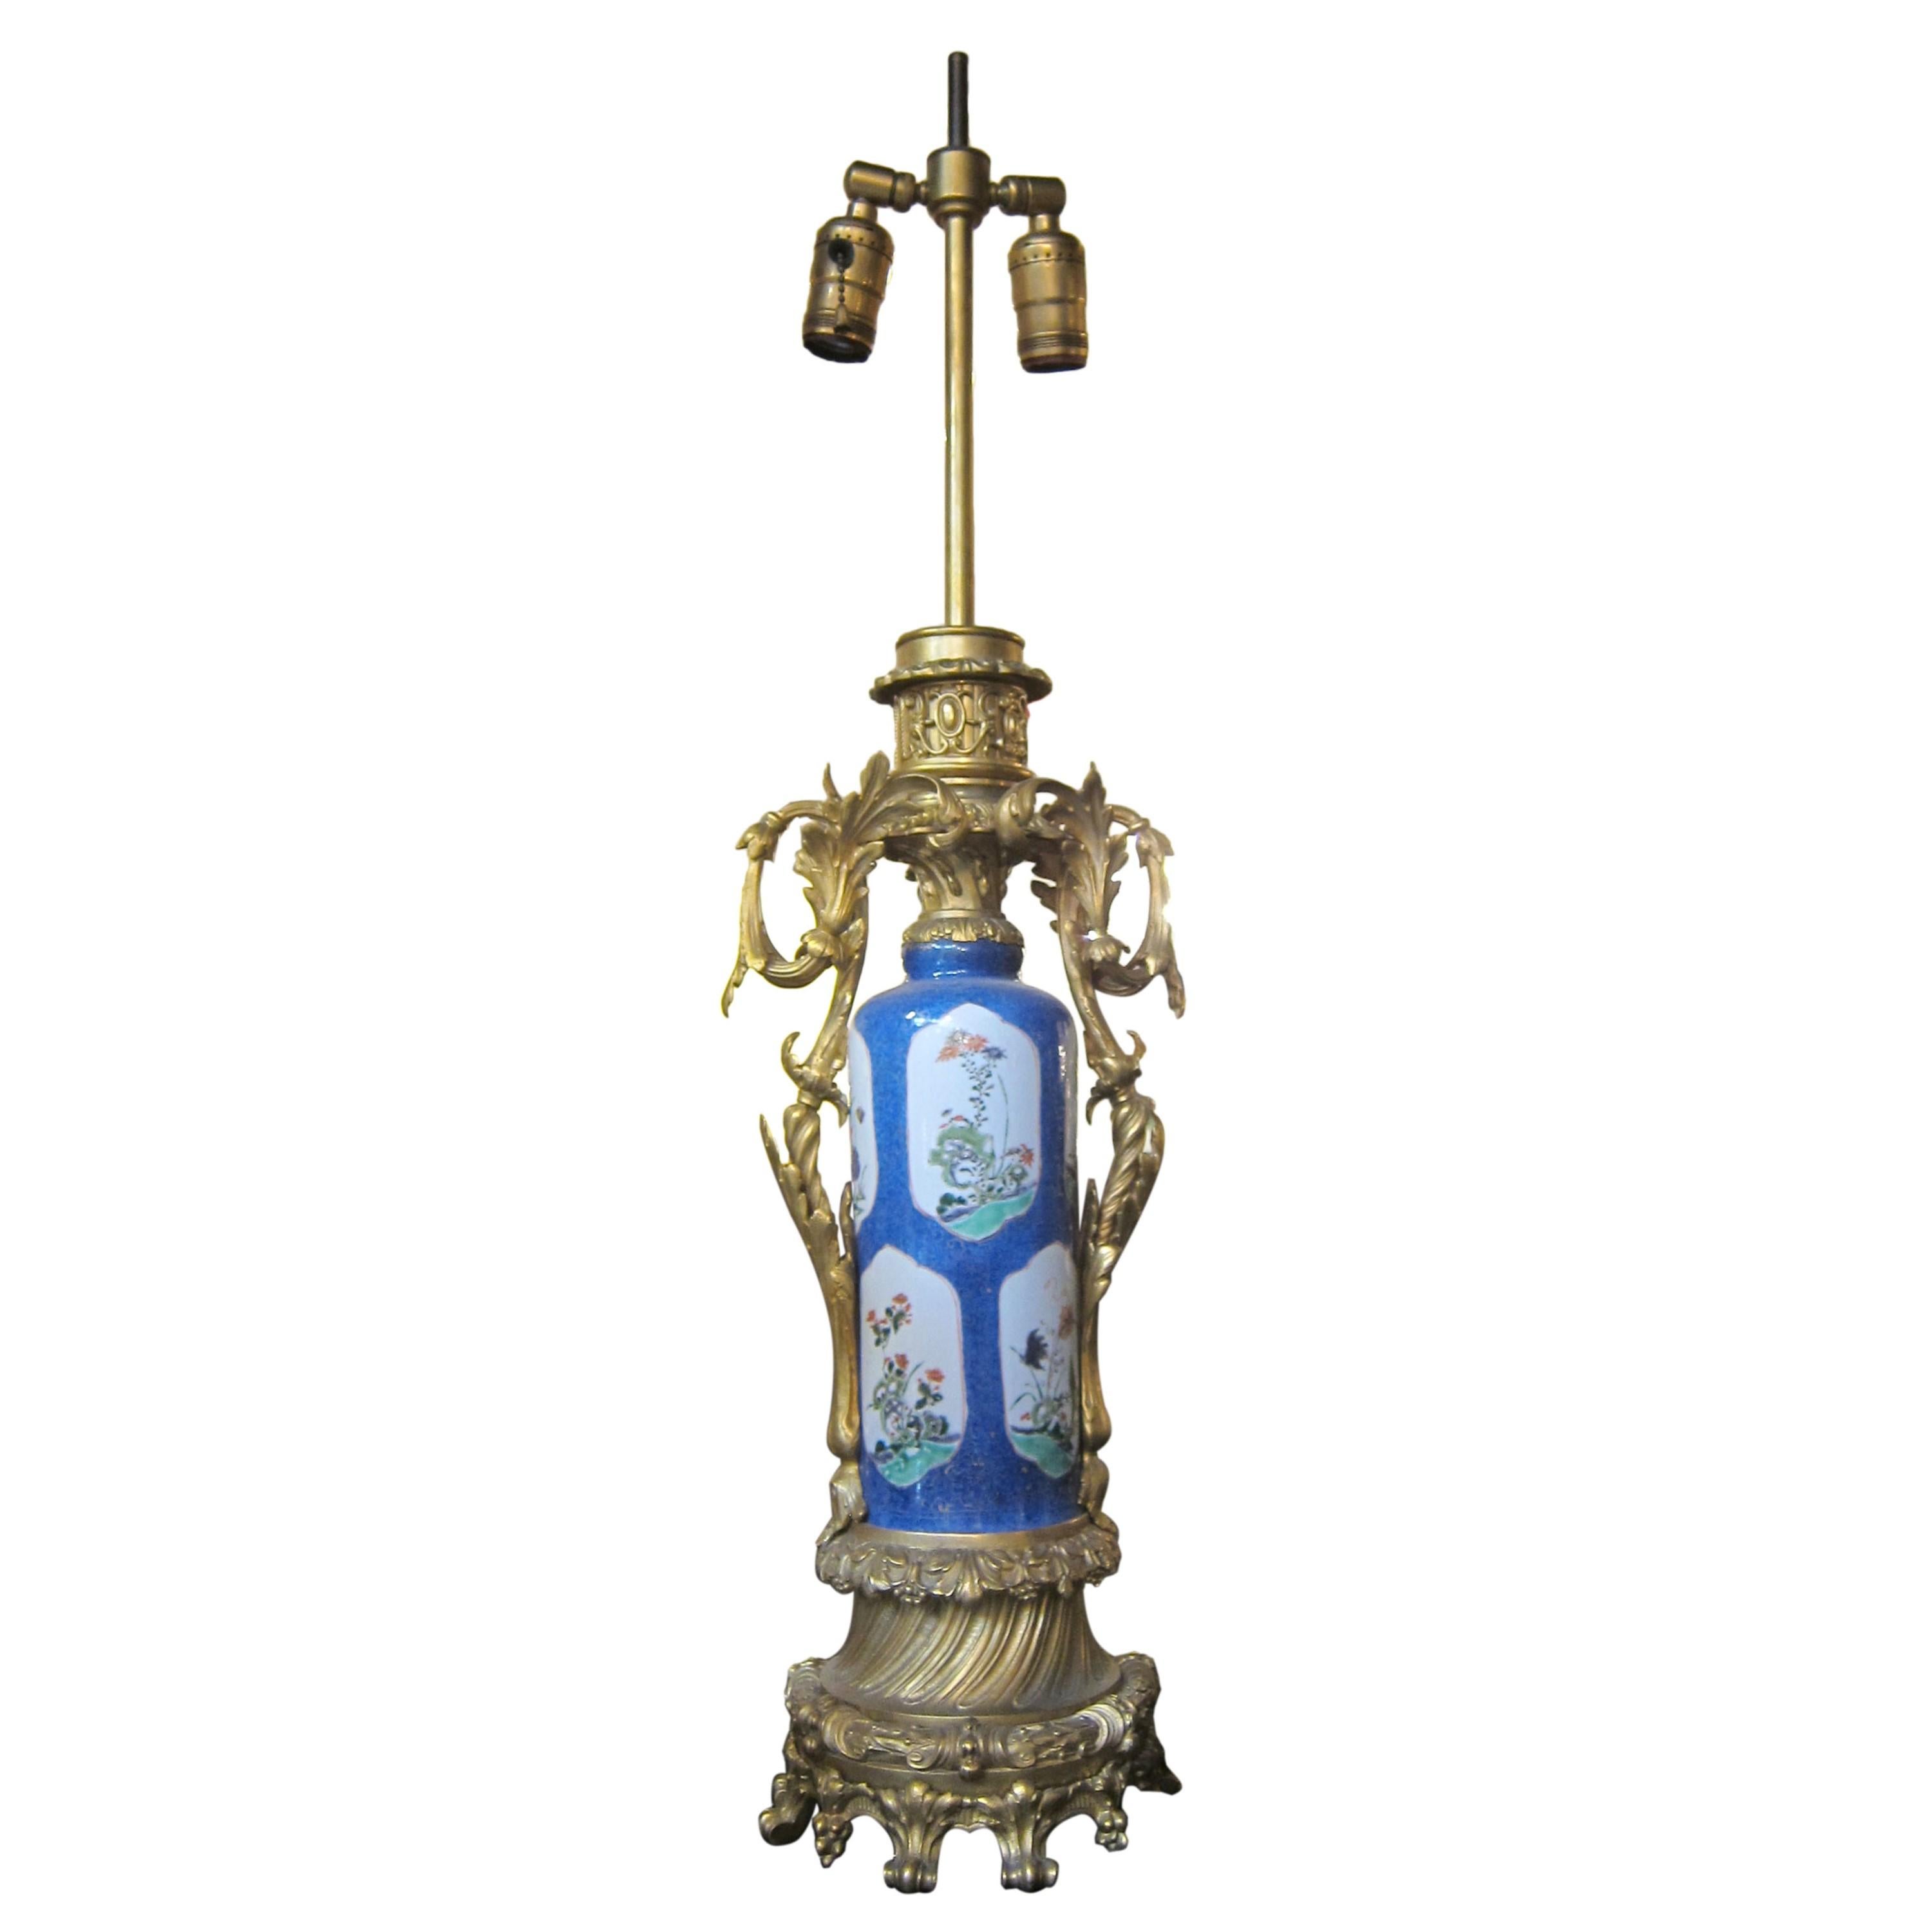 Paar französische Urnen-Tischlampen aus blauem Porzellan mit fein detaillierten Bronze- und Ormolu-Beschlägen. Jede Leuchte benötigt zwei Glühbirnen. Der Preis gilt für ein Paar. Gereinigt und restauriert. Bitte beachten Sie, dass sich dieser